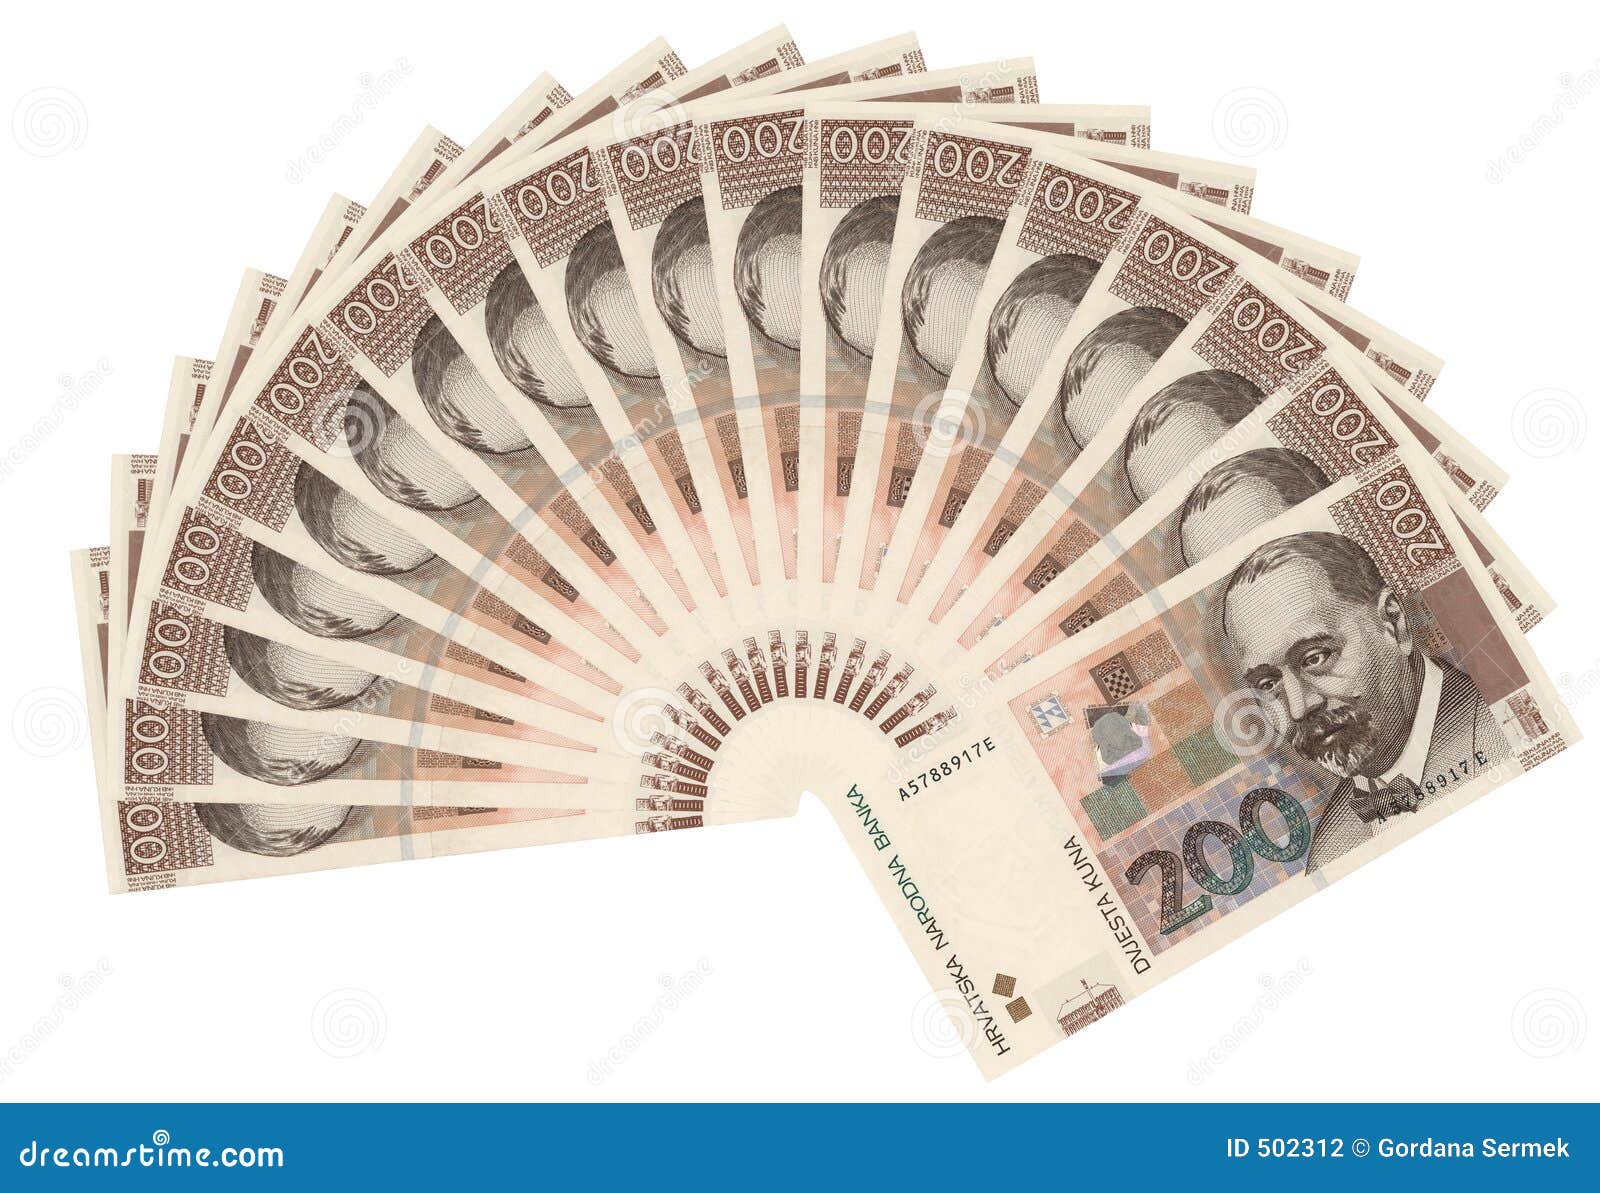 croatian currency-200 kuna bills